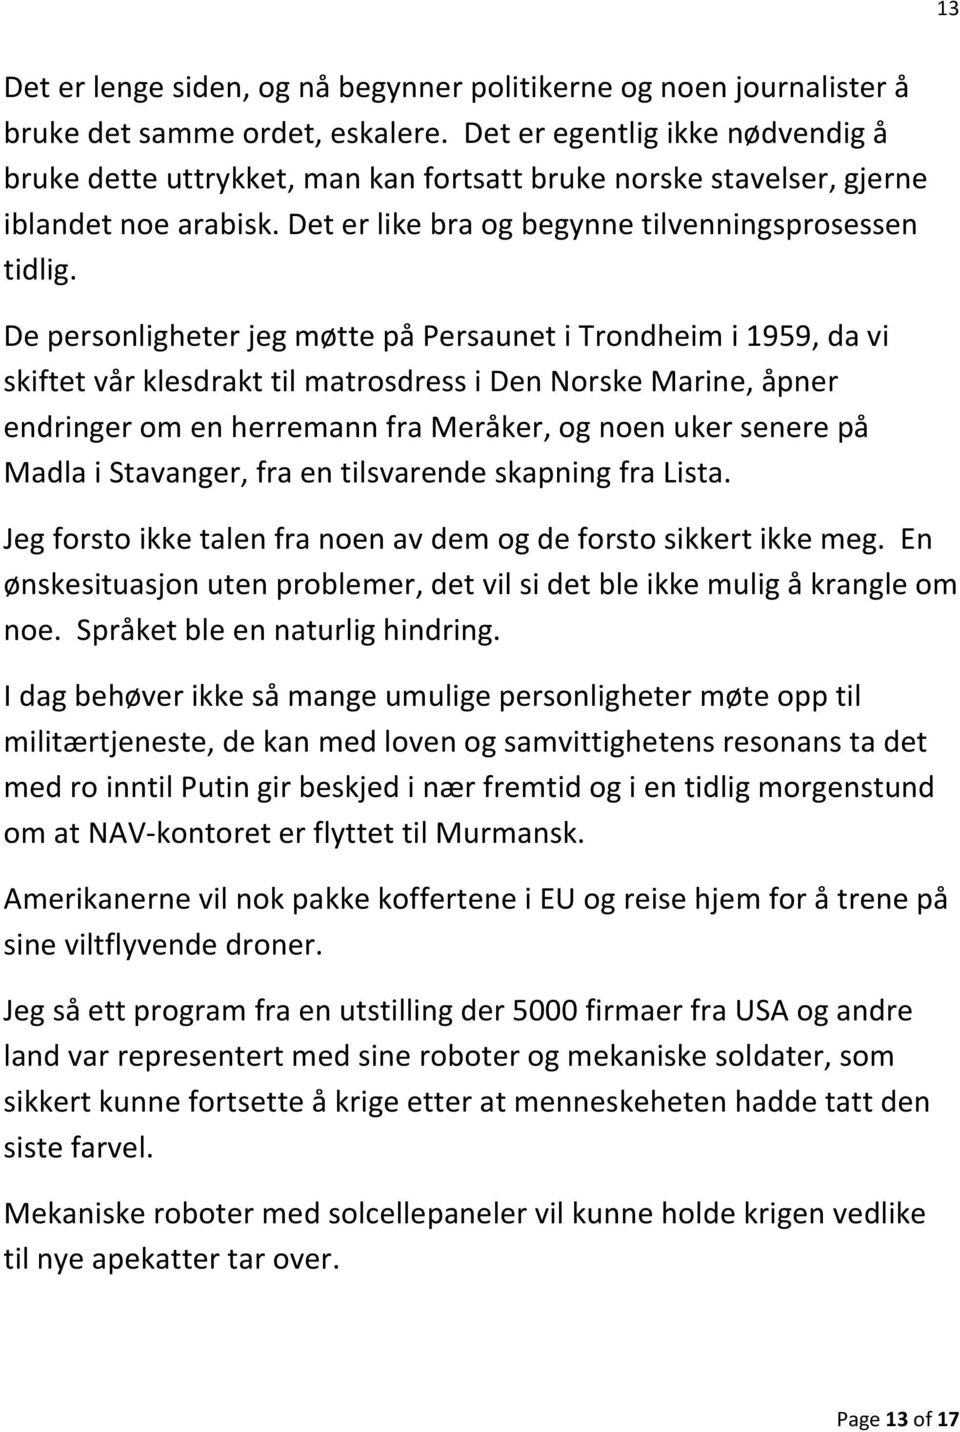 De personligheter jeg møtte på Persaunet i Trondheim i 1959, da vi skiftet vår klesdrakt til matrosdress i Den Norske Marine, åpner endringer om en herremann fra Meråker, og noen uker senere på Madla